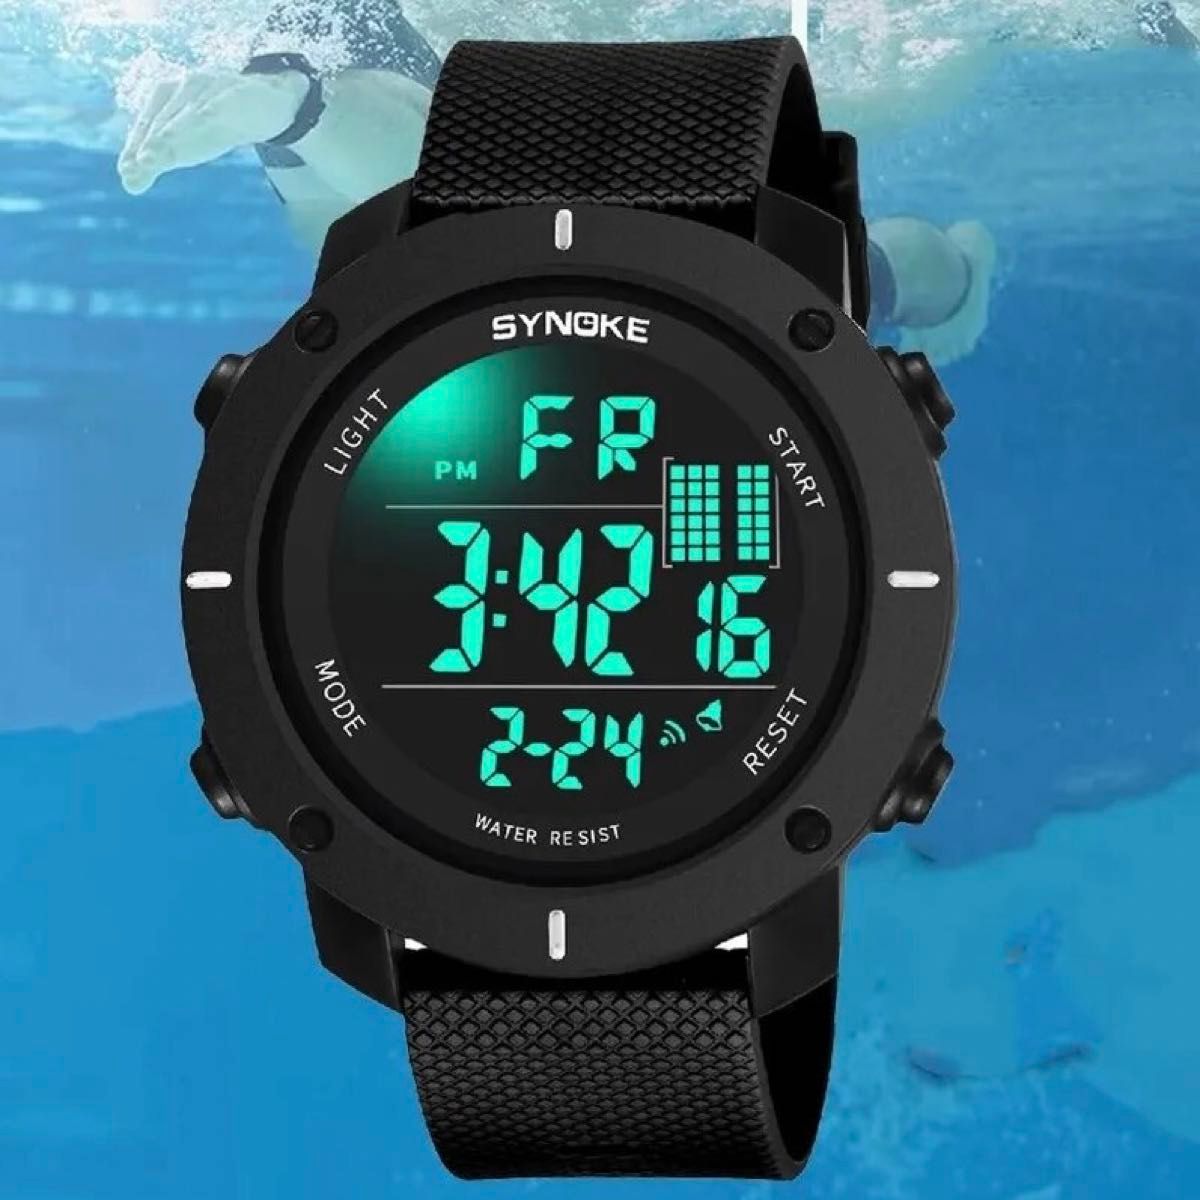 新品 SYNOKEスポーツデジタル 防水 デジタルストップウォッチ メンズ腕時計 9658 ブラック